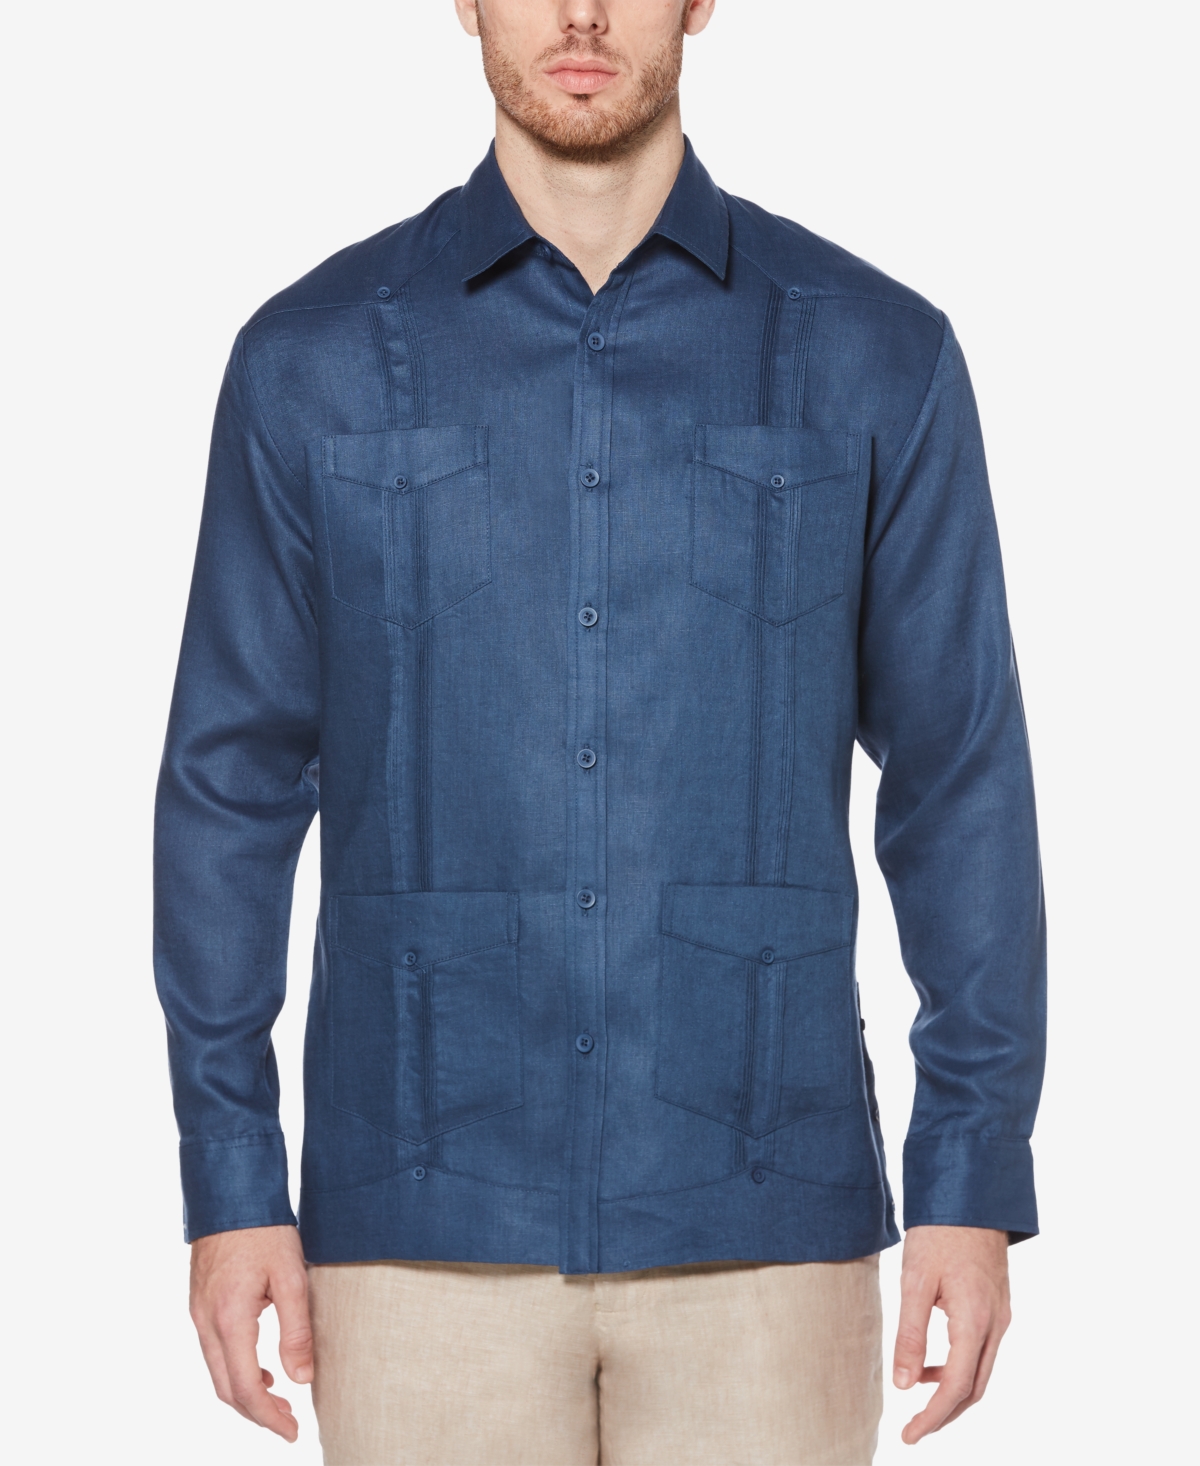 Men's 100% Linen Long Sleeve 4 Pocket Guayabera Shirt - Cashmere Blue